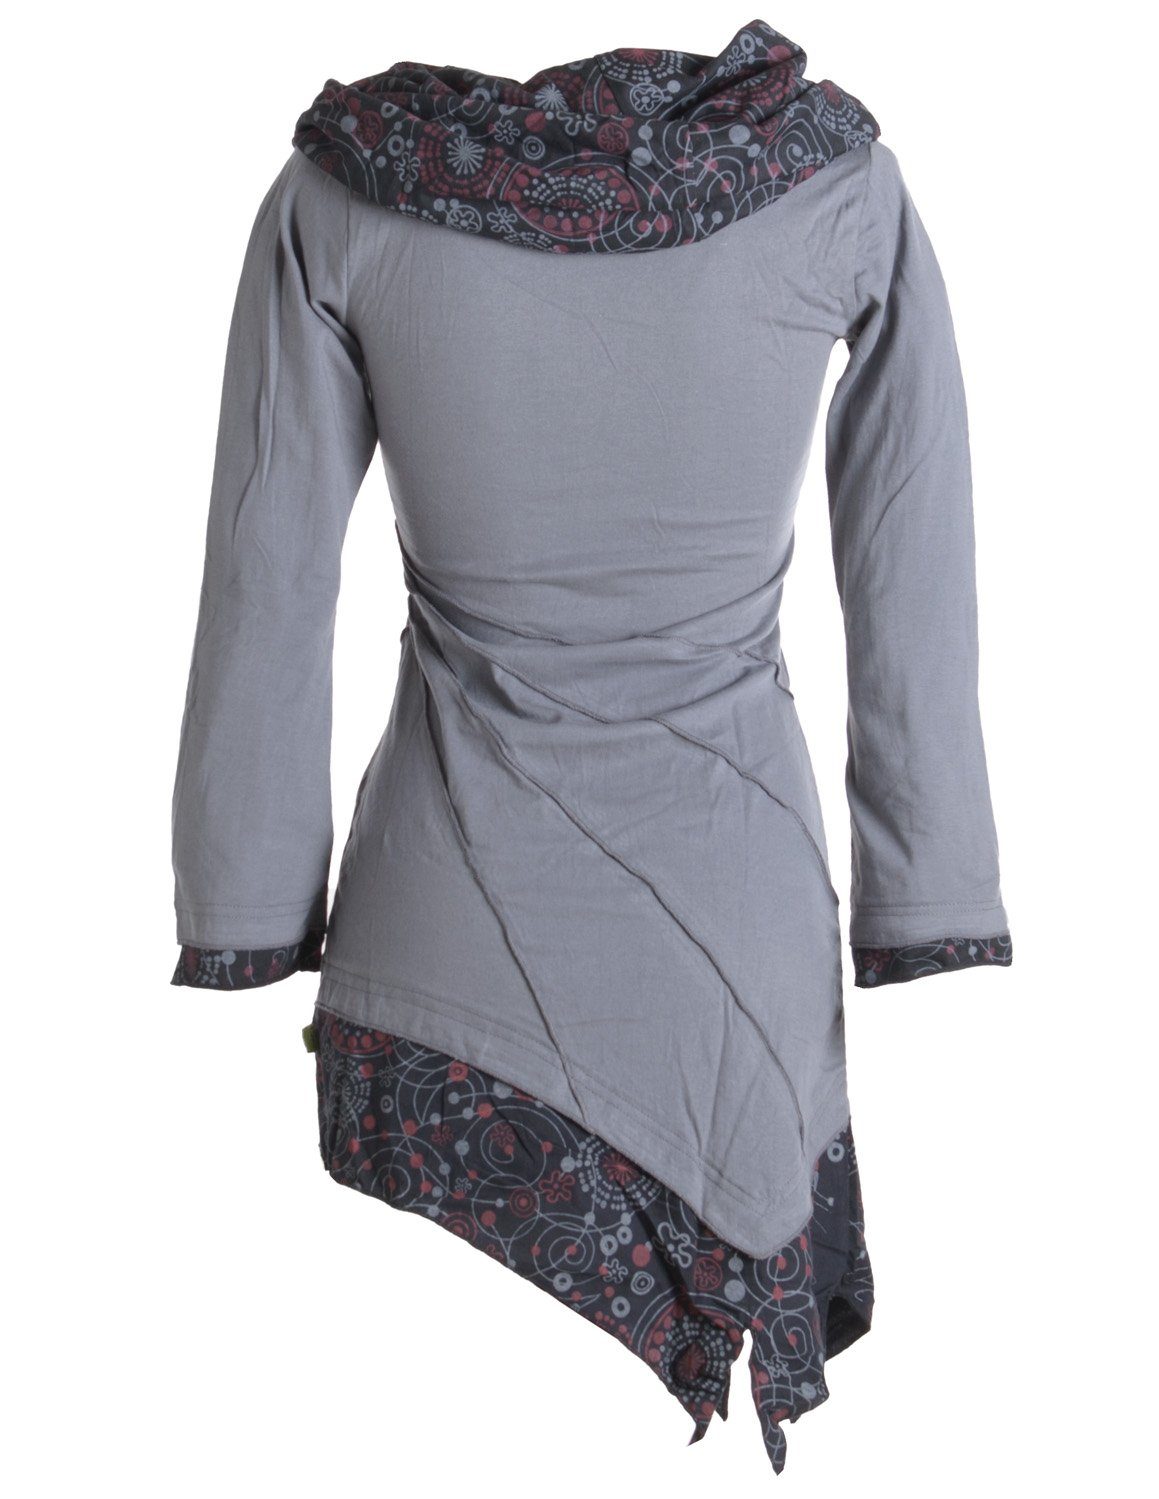 Baumwolle Goa, Boho grau Hippie, Kleid mit Vishes Style Schalkragen aus Ethno, Asymmetrisches Jerseykleid